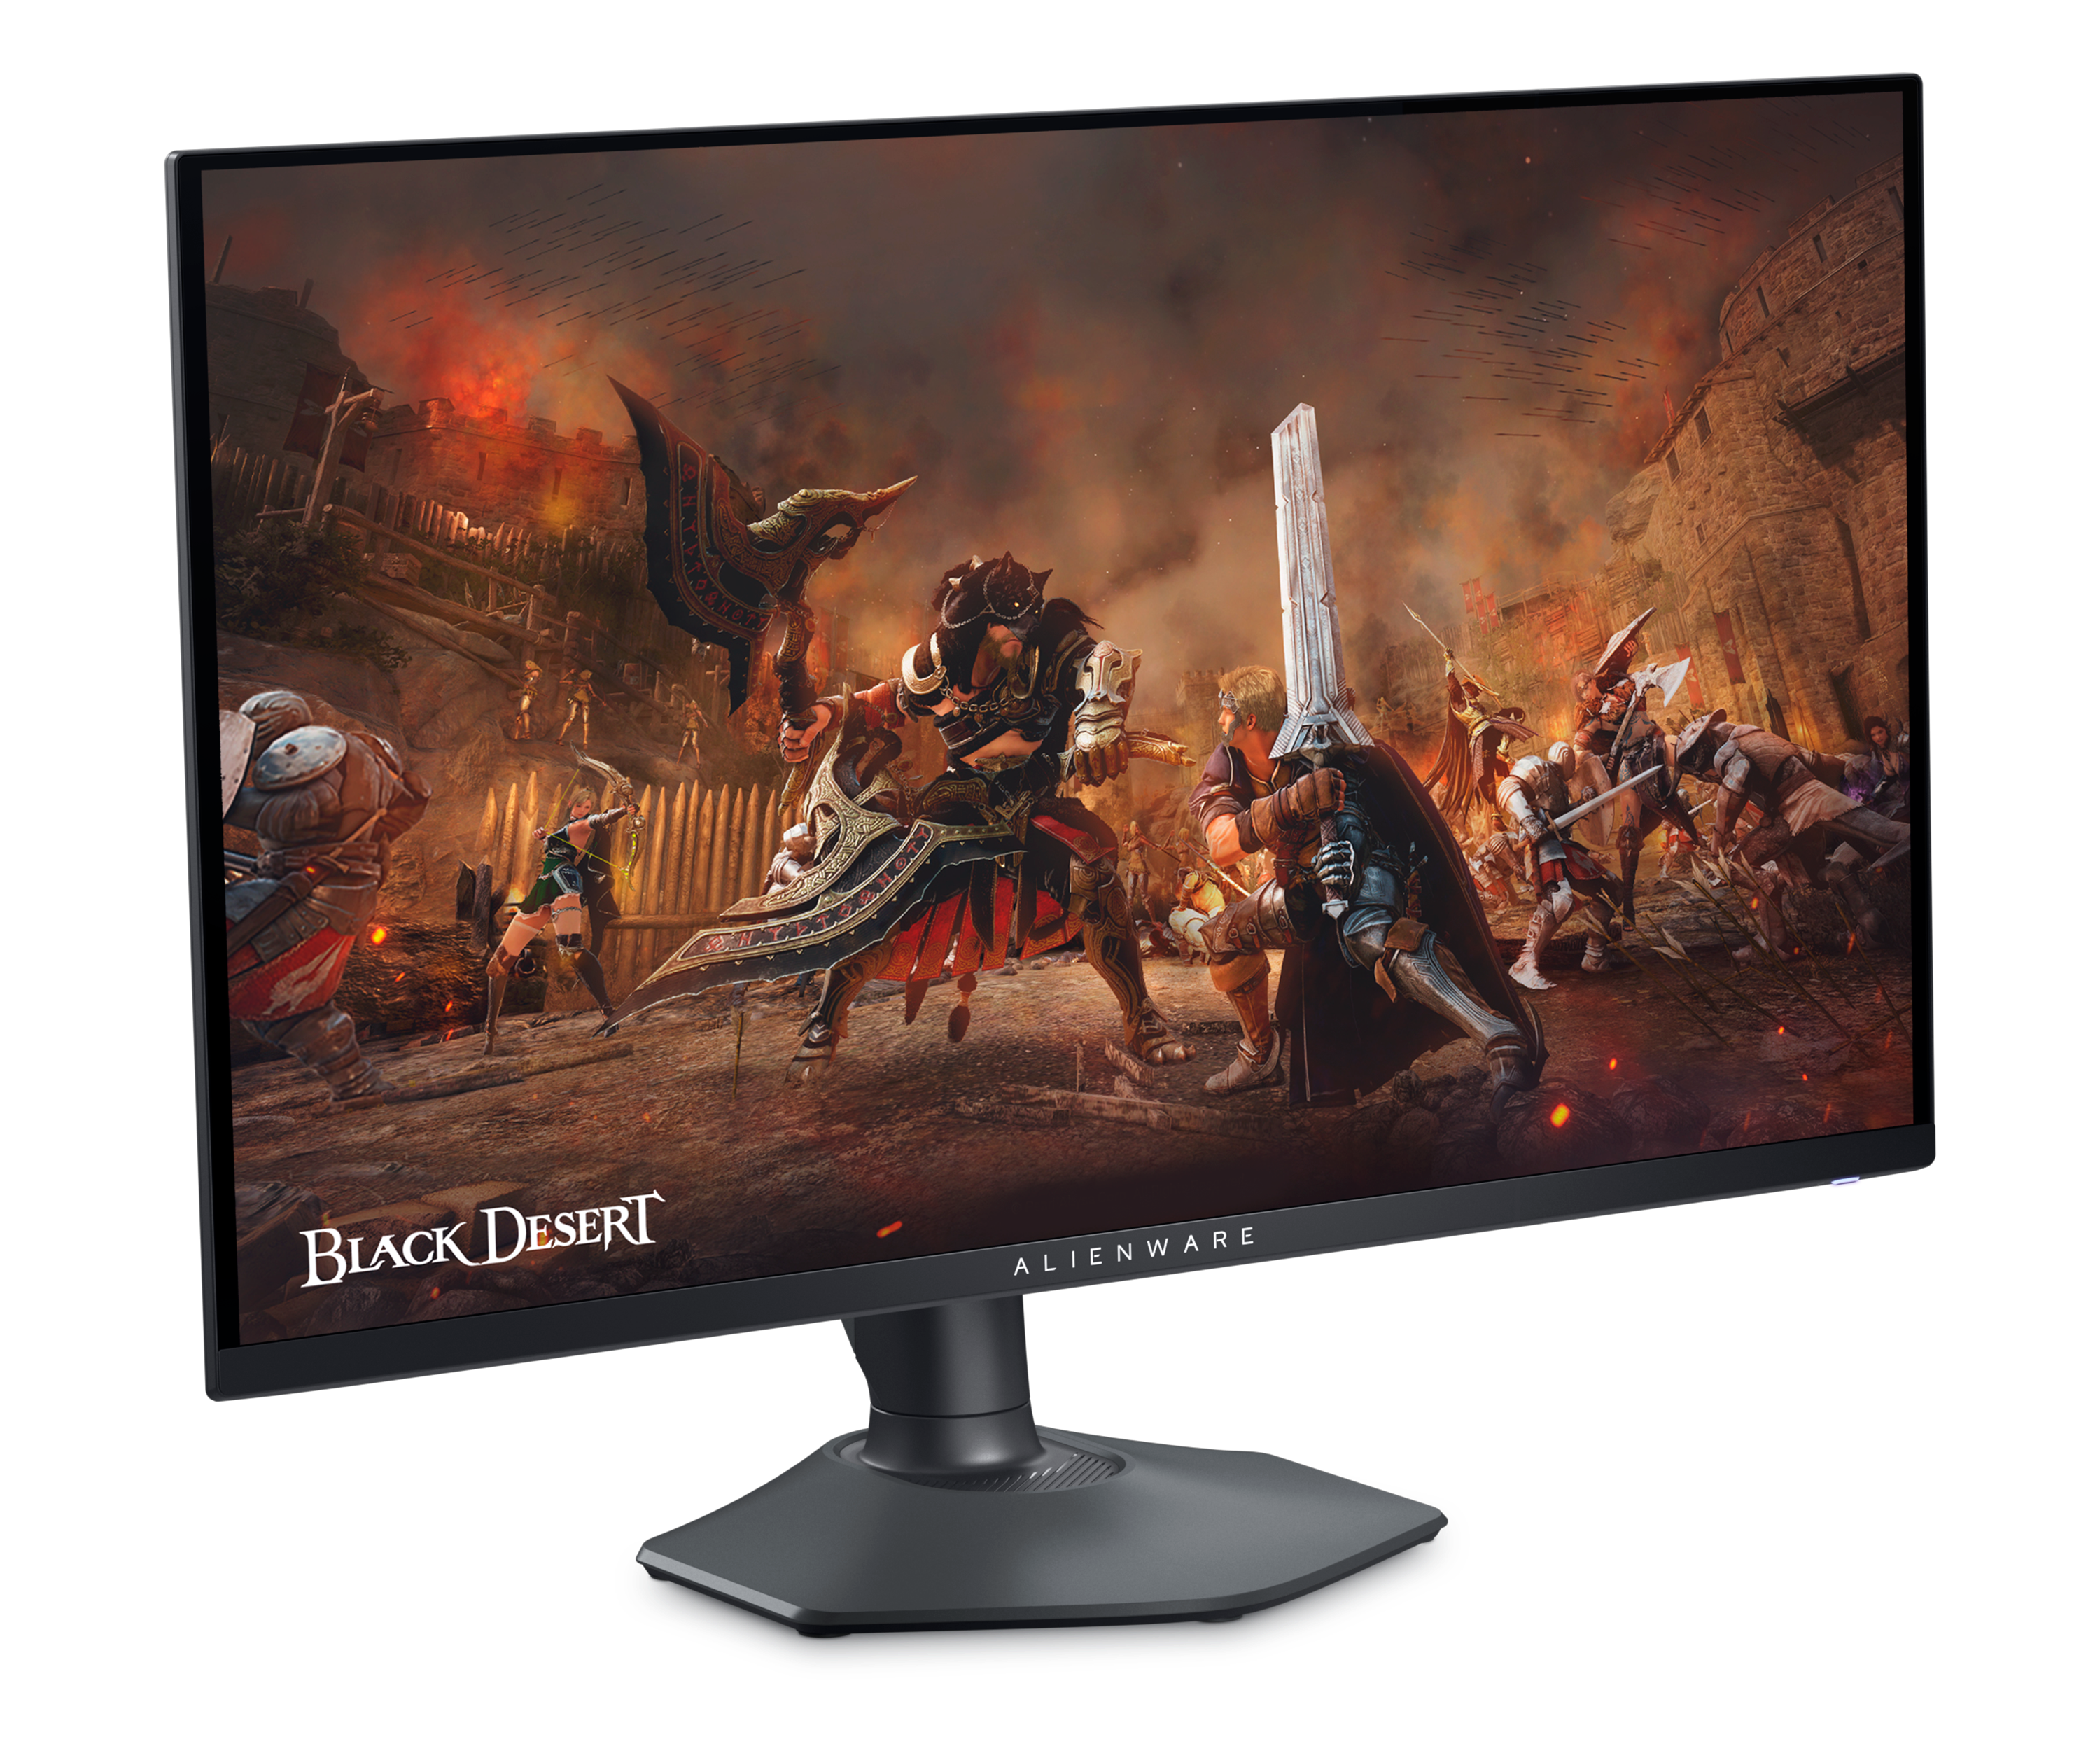 화면에 Black Desert 게임 이미지가 표시된 Dell AW2725DF 게이밍 모니터.